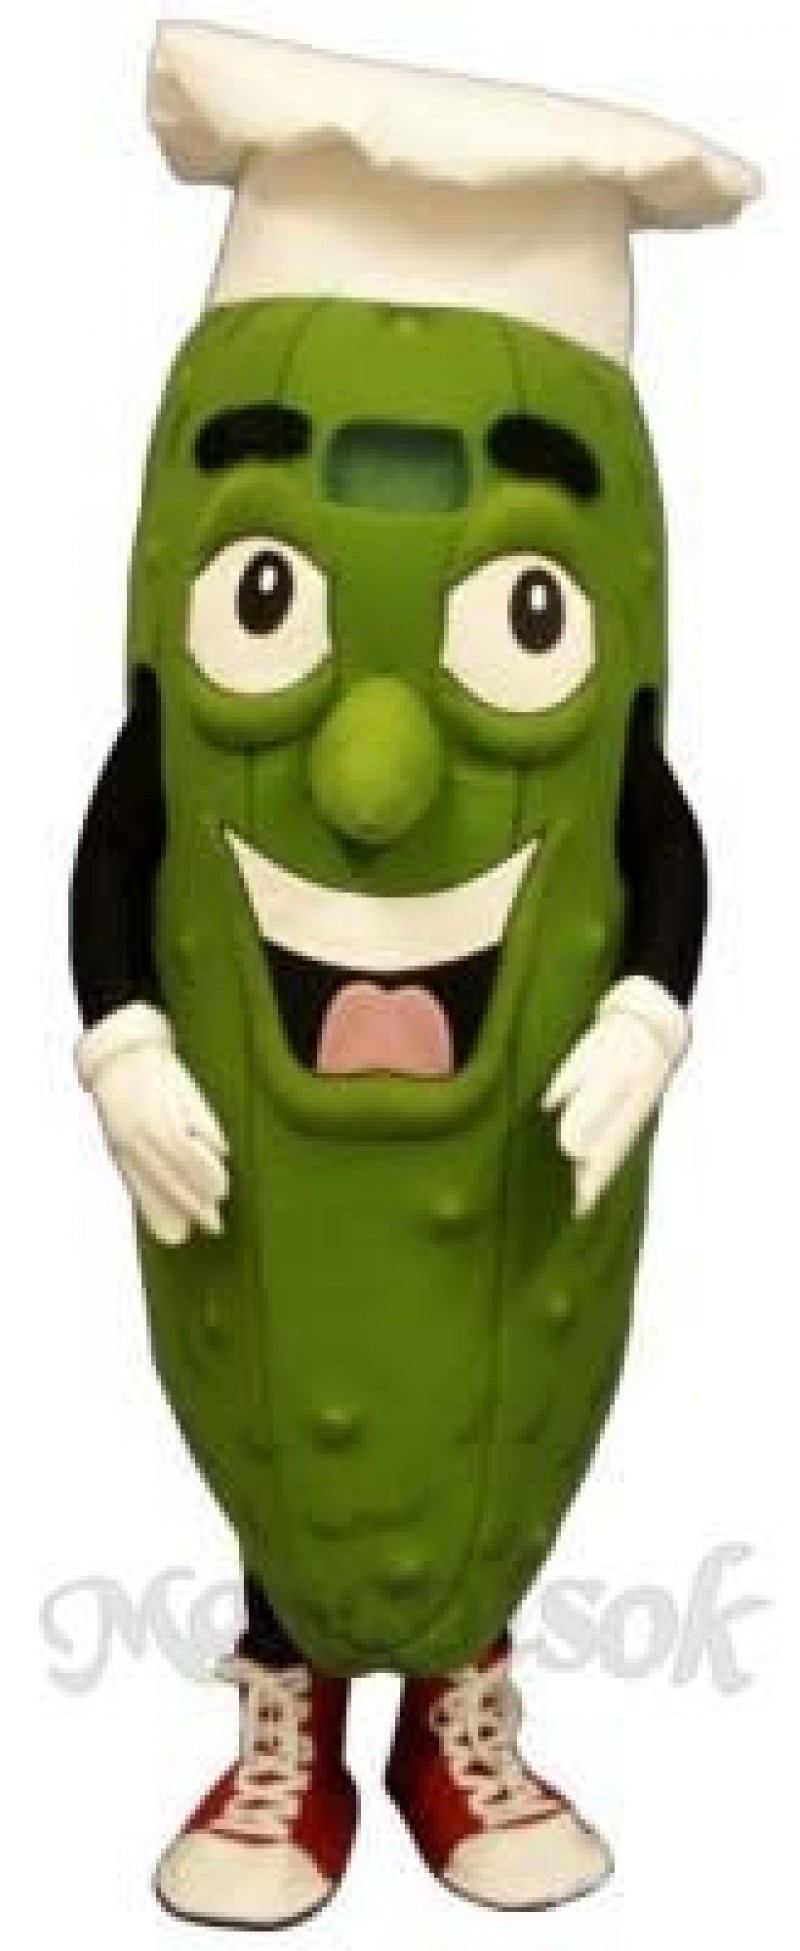 Pickled Chef Mascot Costume